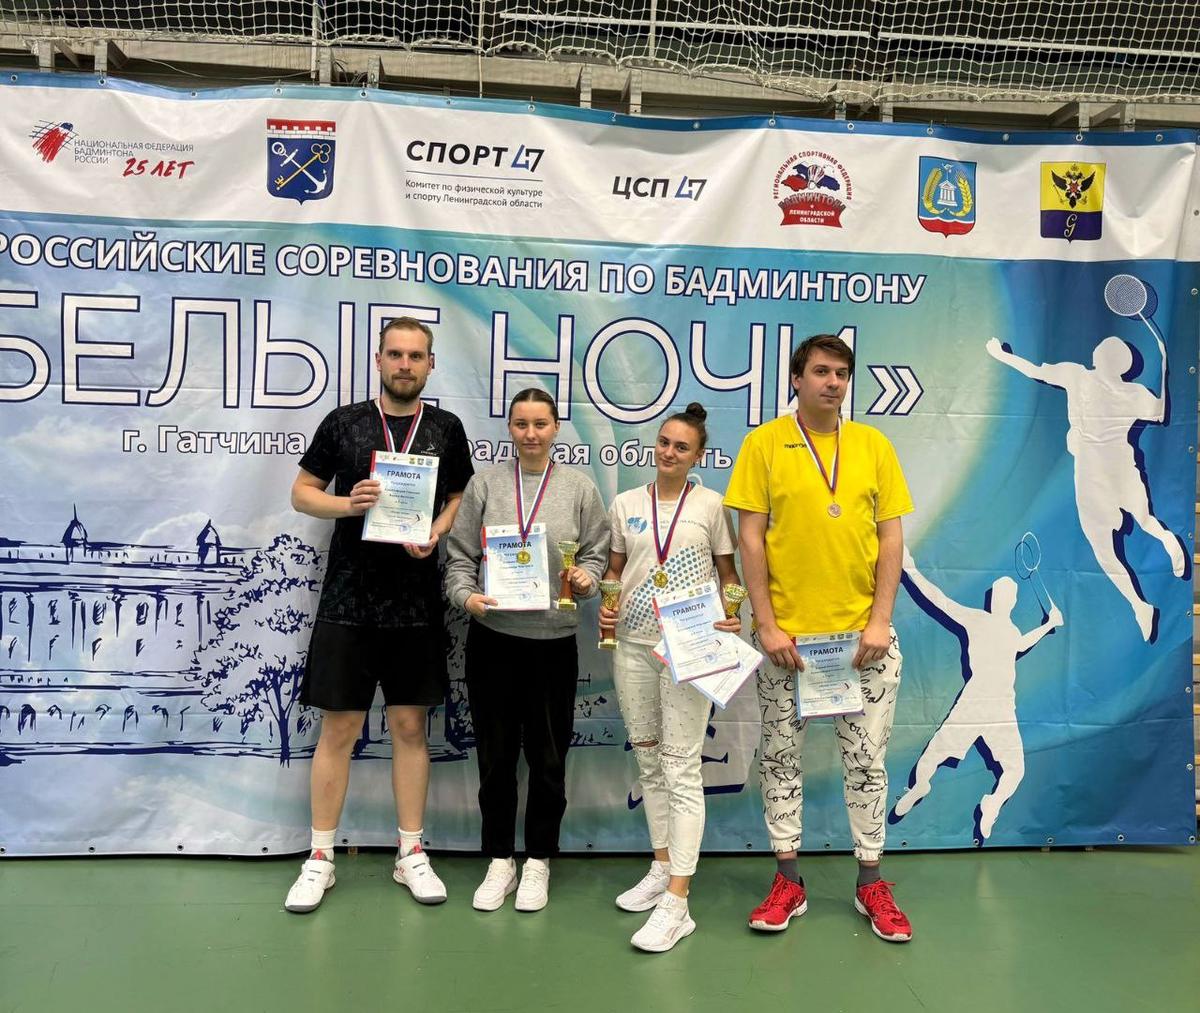 Ставропольские бадминтонисты выиграли 5 медалей на турнире в Гатчине